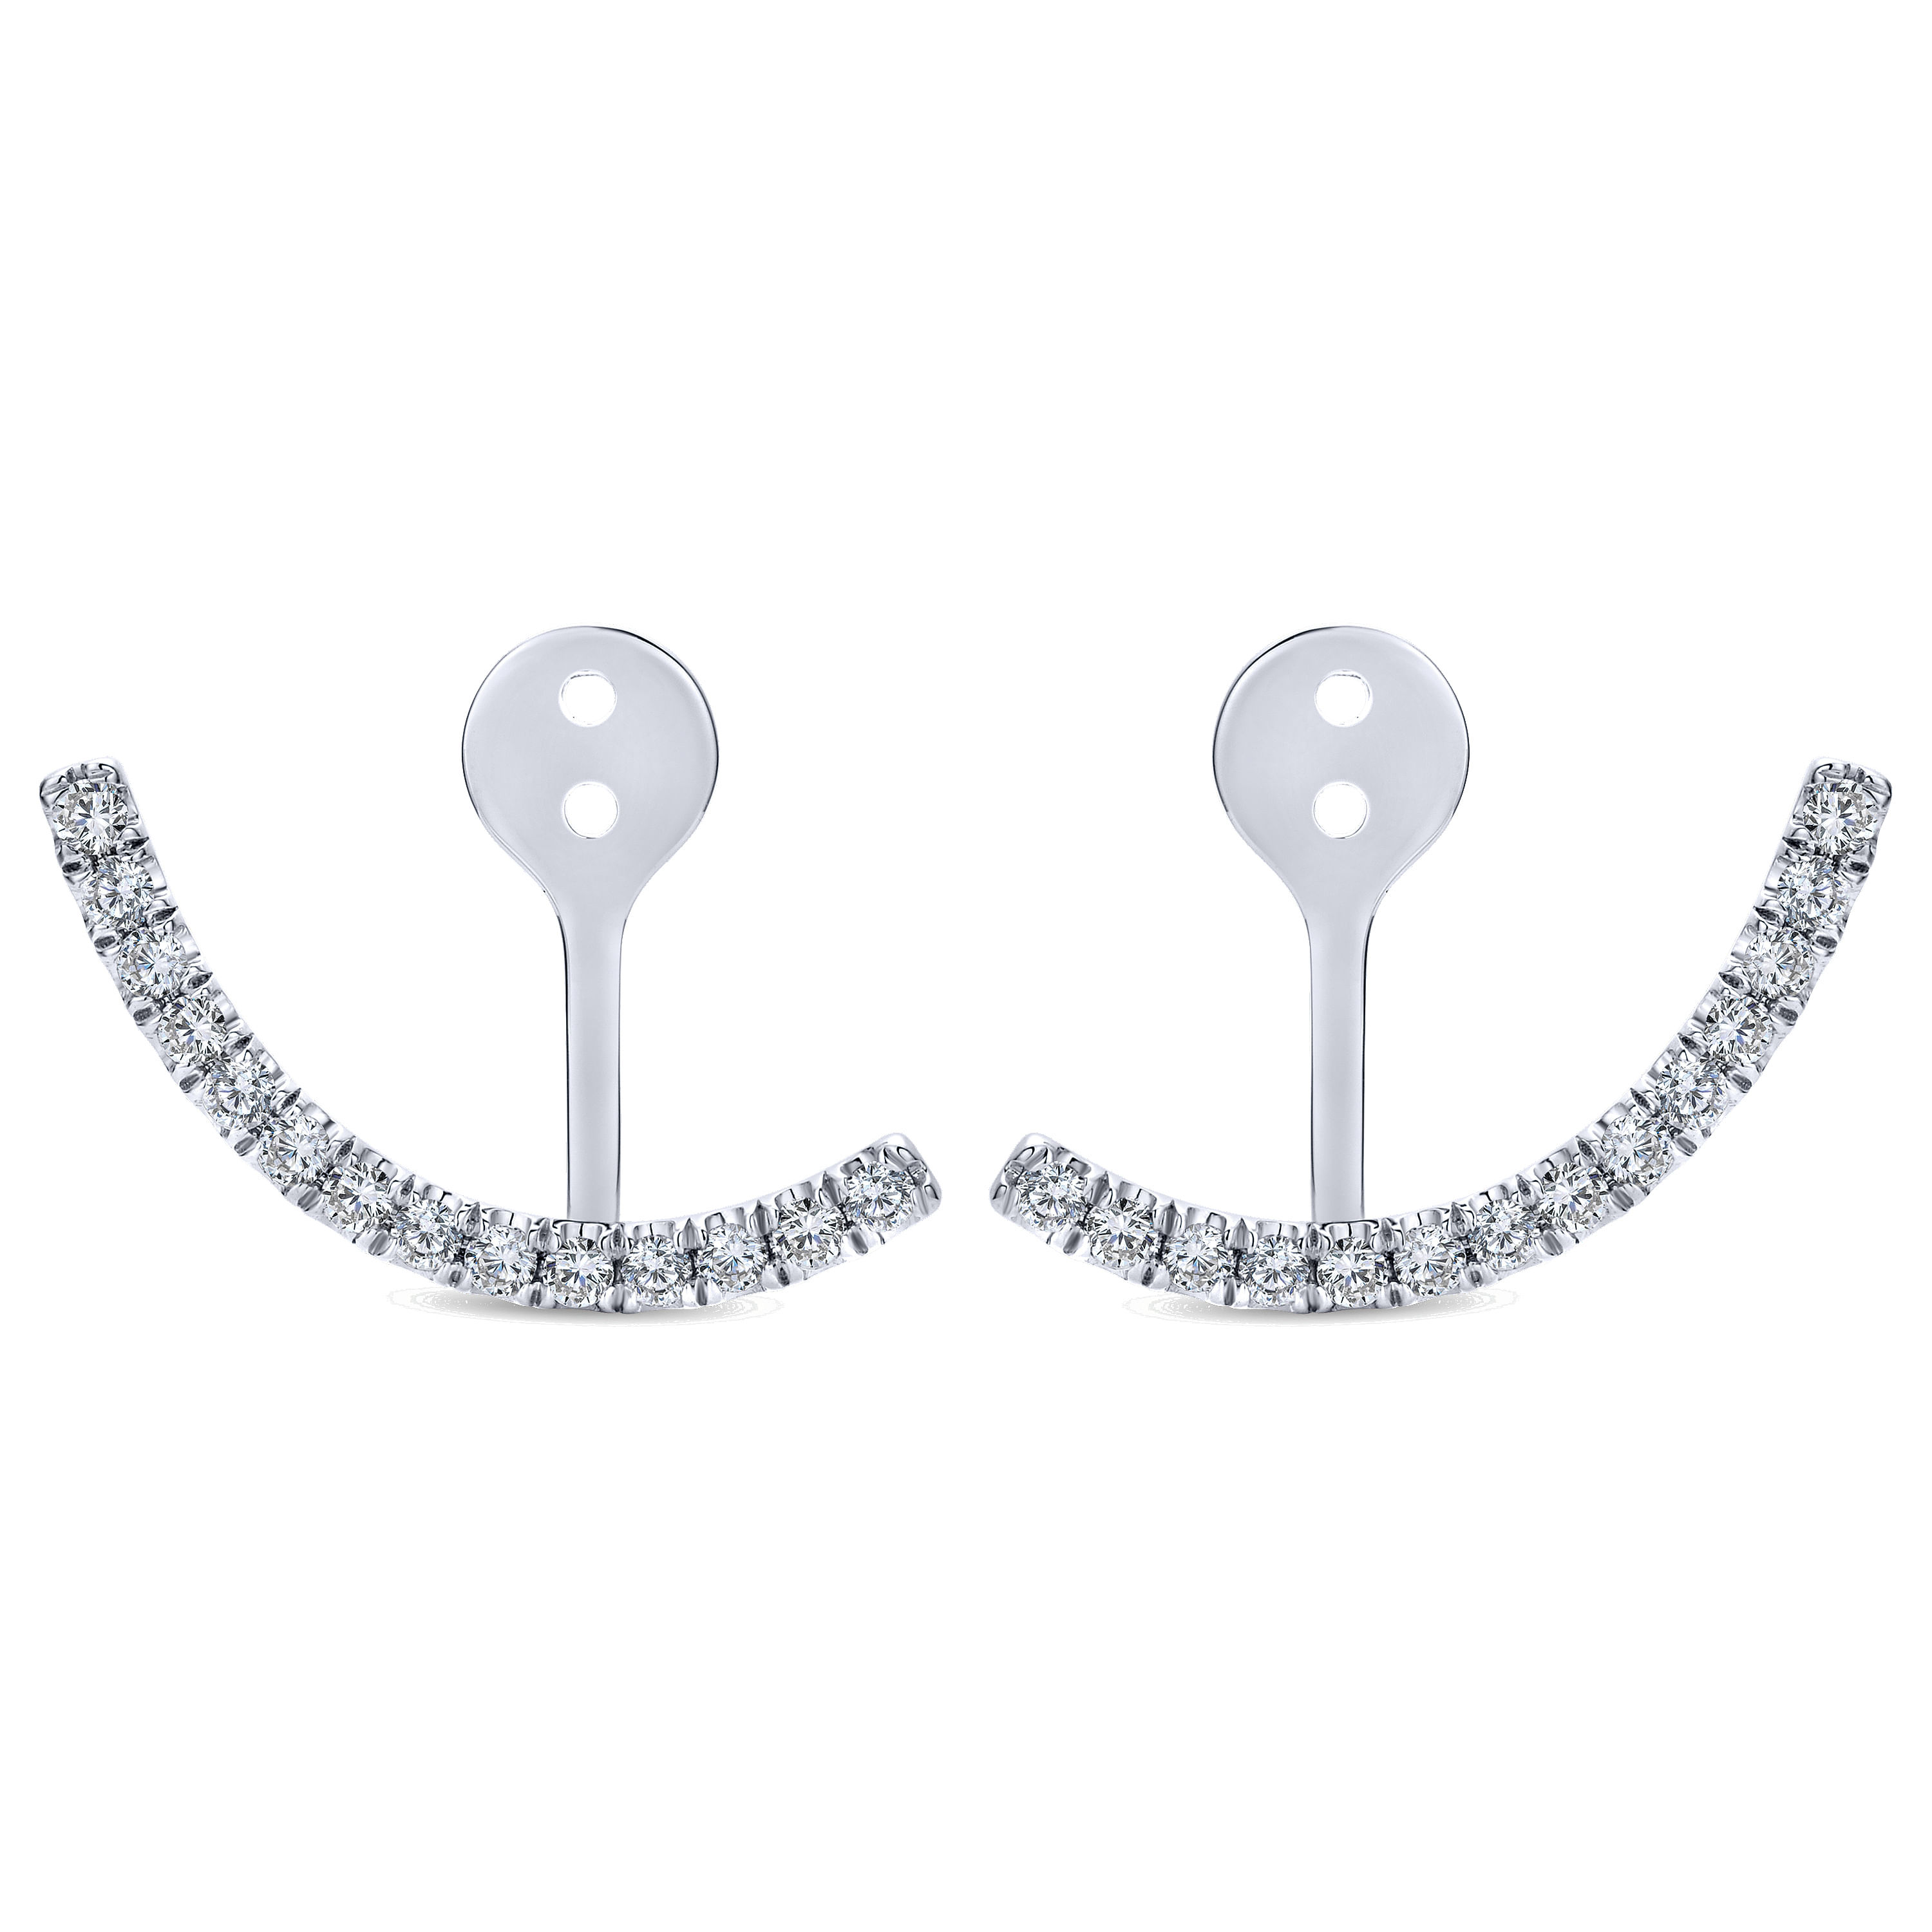 14K White Gold Curved Diamond Bar Enhancer Earrings